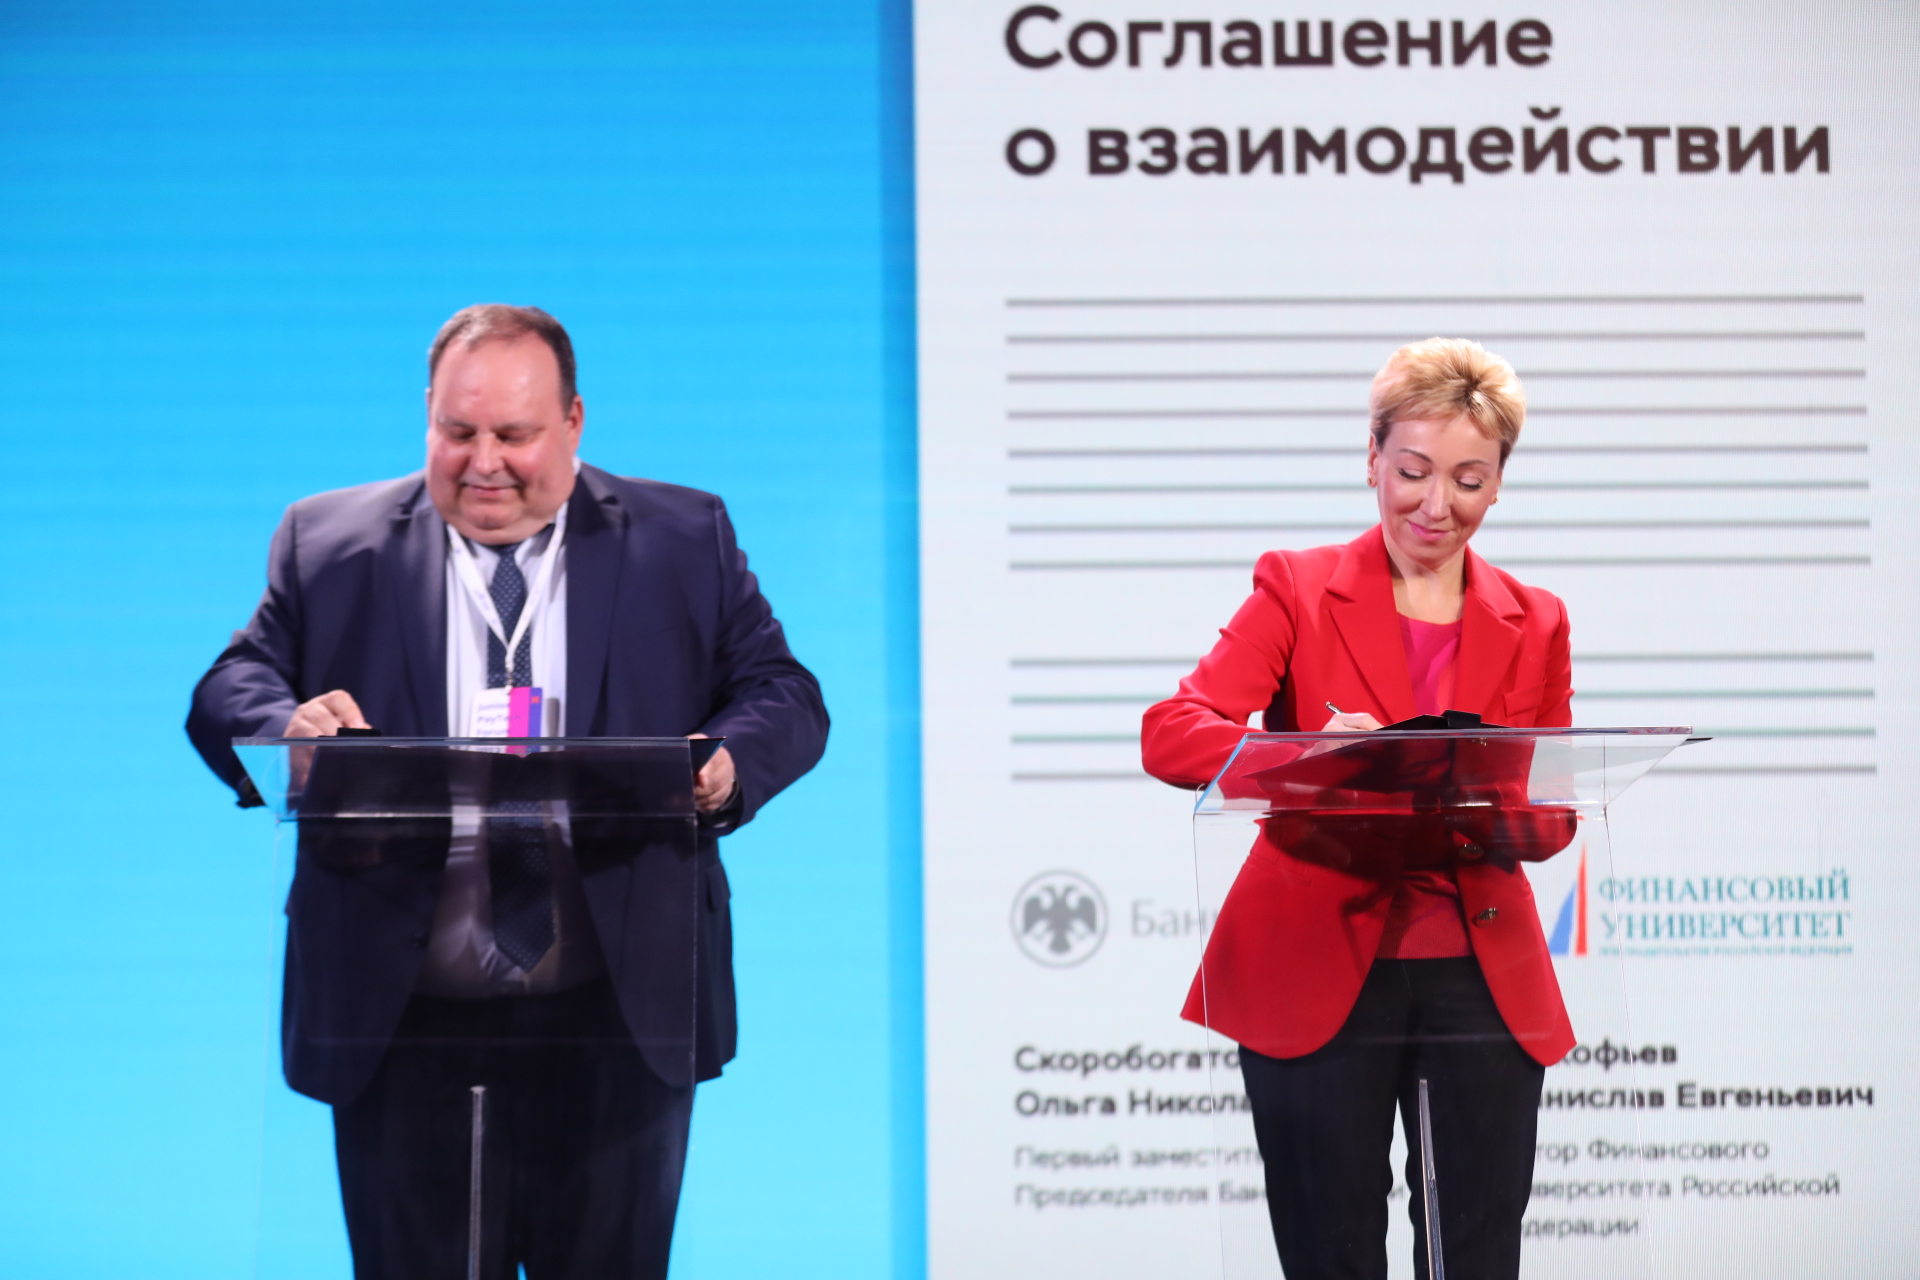 Финансовый университет и Банк России подписали соглашение о сотрудничестве в сфере финтеха